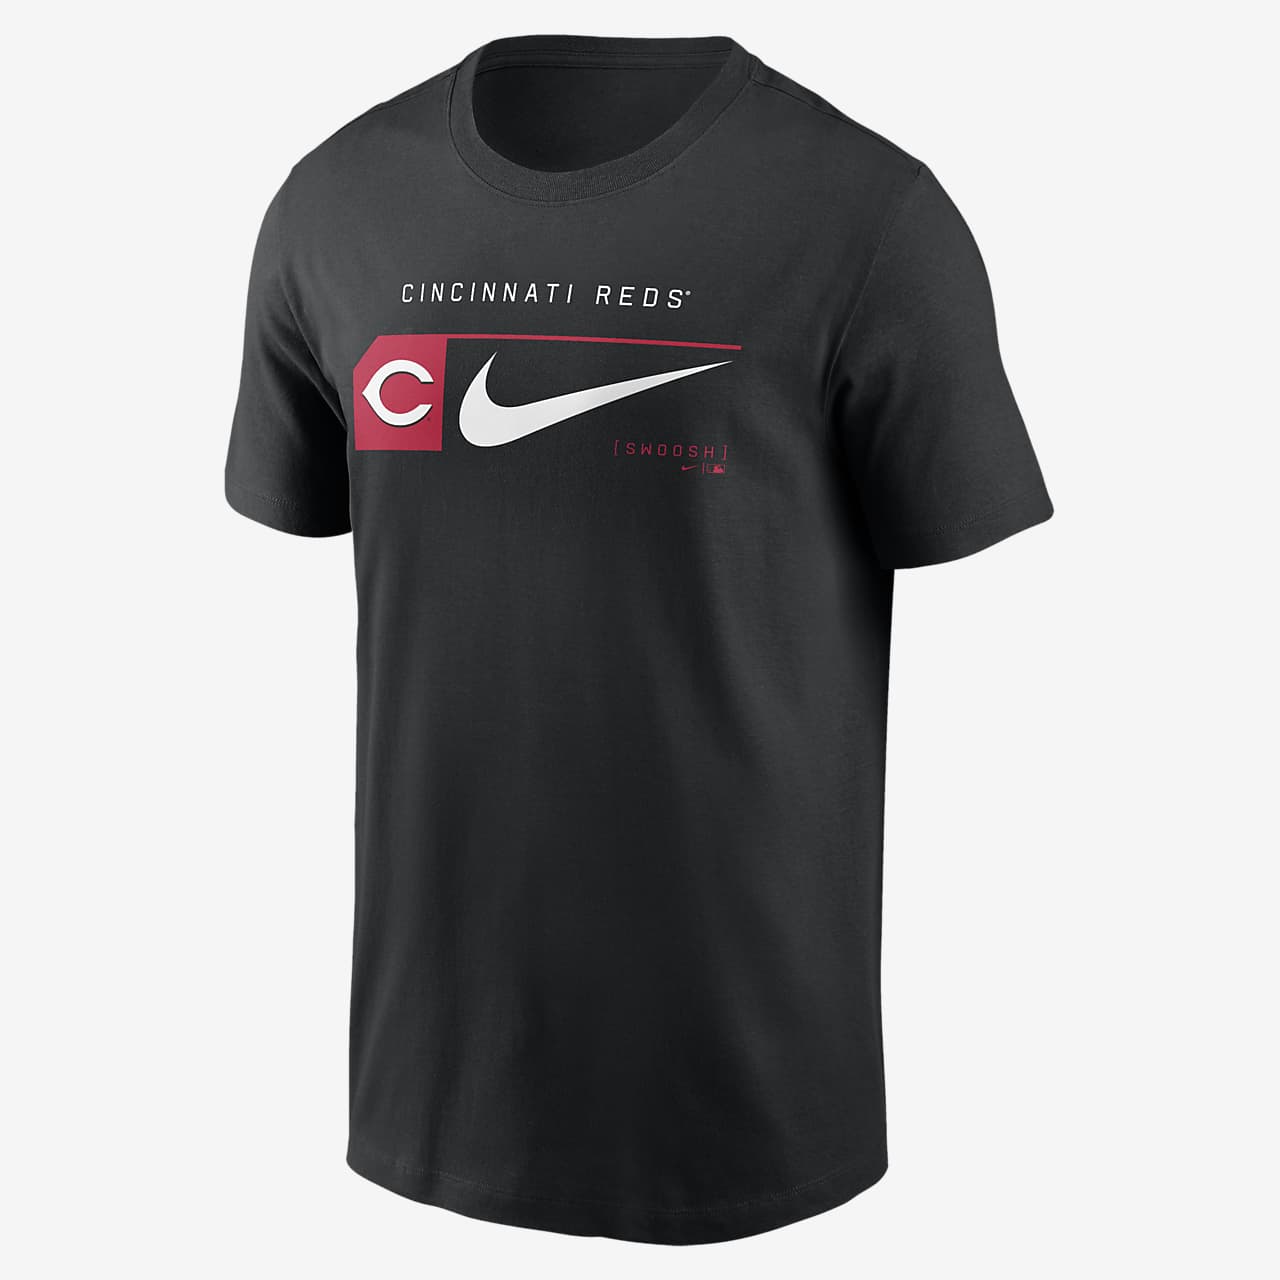 Playera Nike de la MLB para hombre Cincinnati Reds Team Swoosh Lockup